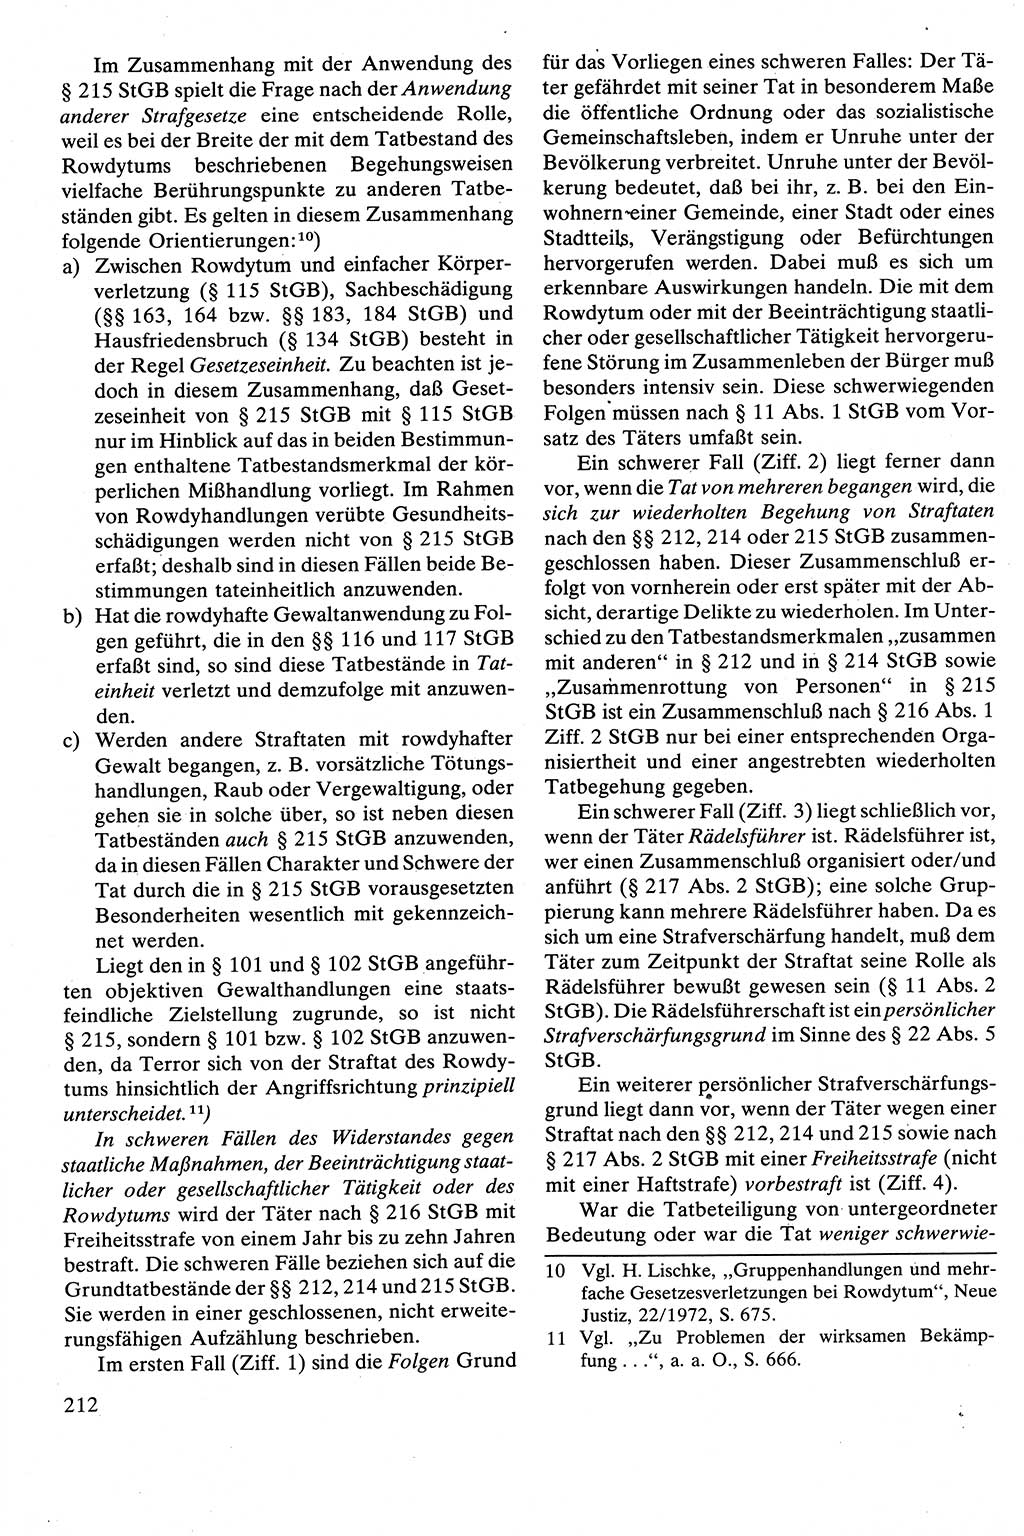 Strafrecht [Deutsche Demokratische Republik (DDR)], Besonderer Teil, Lehrbuch 1981, Seite 212 (Strafr. DDR BT Lb. 1981, S. 212)